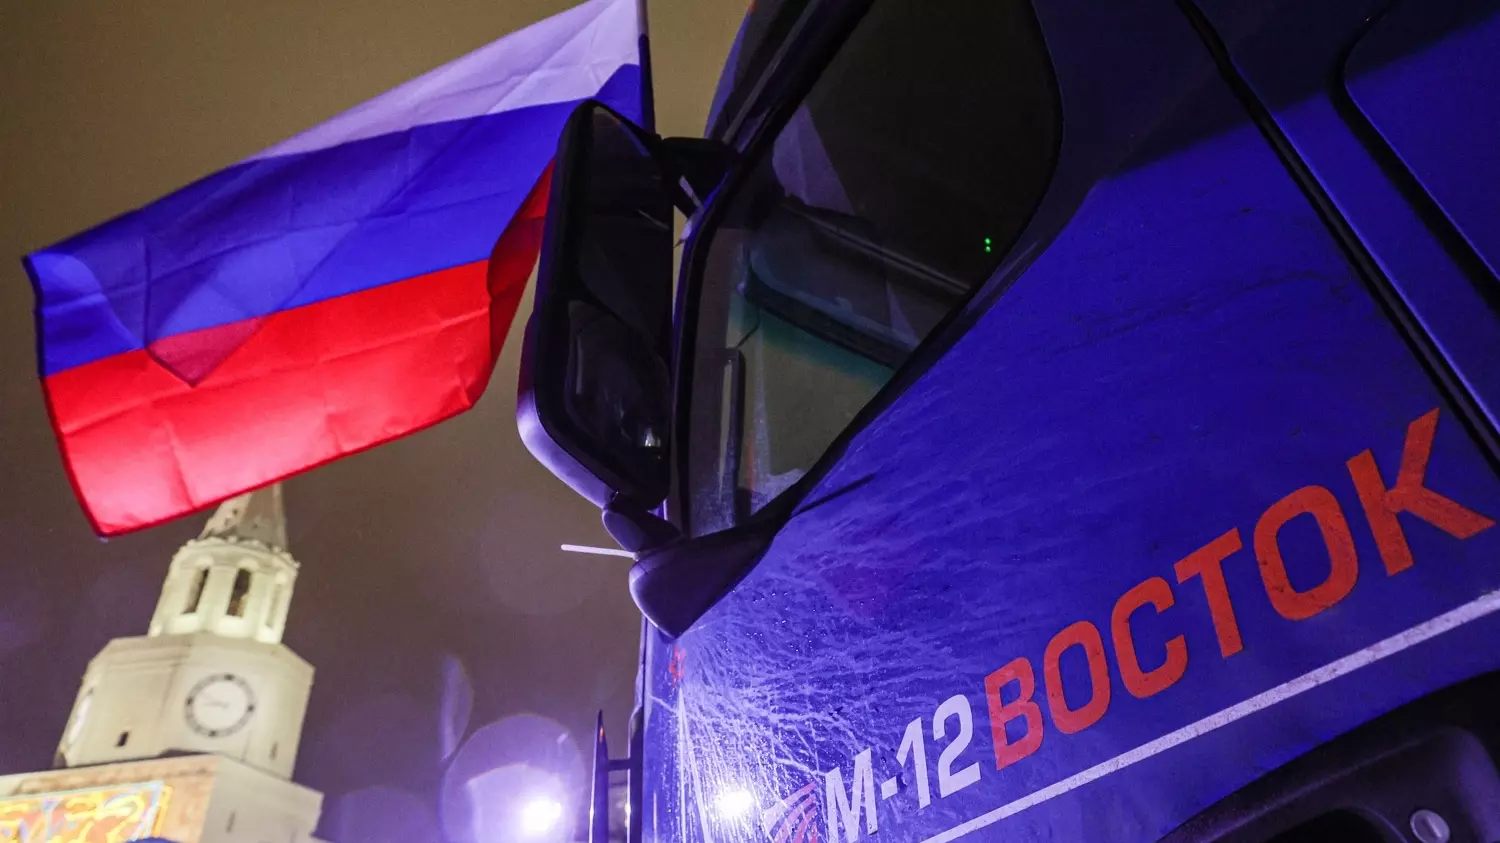 21 декабря прошла церемония открытия трассы М-12 «Восток» от Москвы до Казани. 810 км пути обойдутся в 4800 рублей